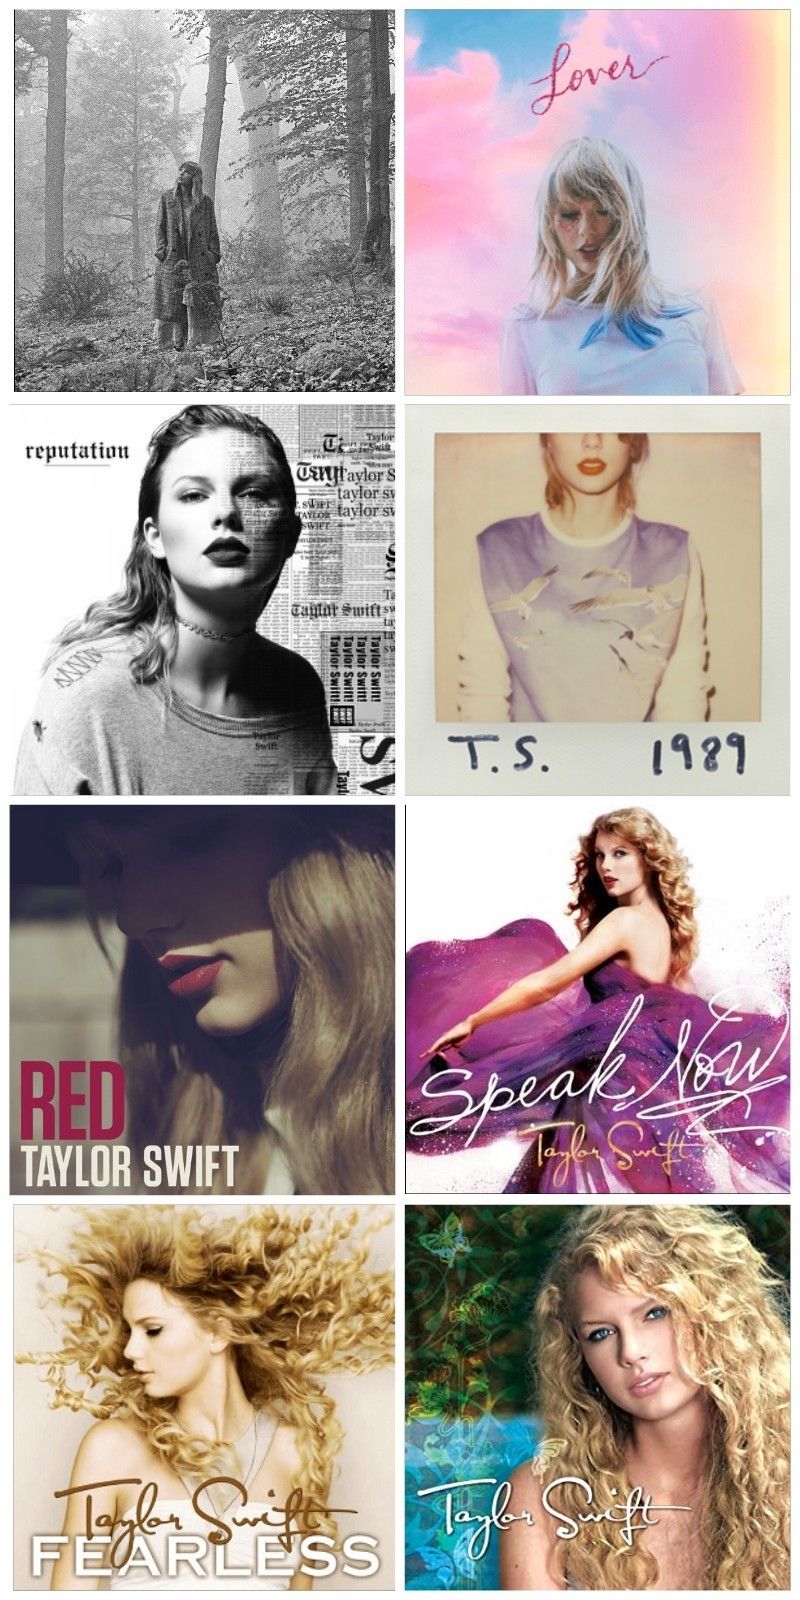 Taylor swift wallpaper. Taylor swift wallpaper, Taylor swift picture, Taylor swift